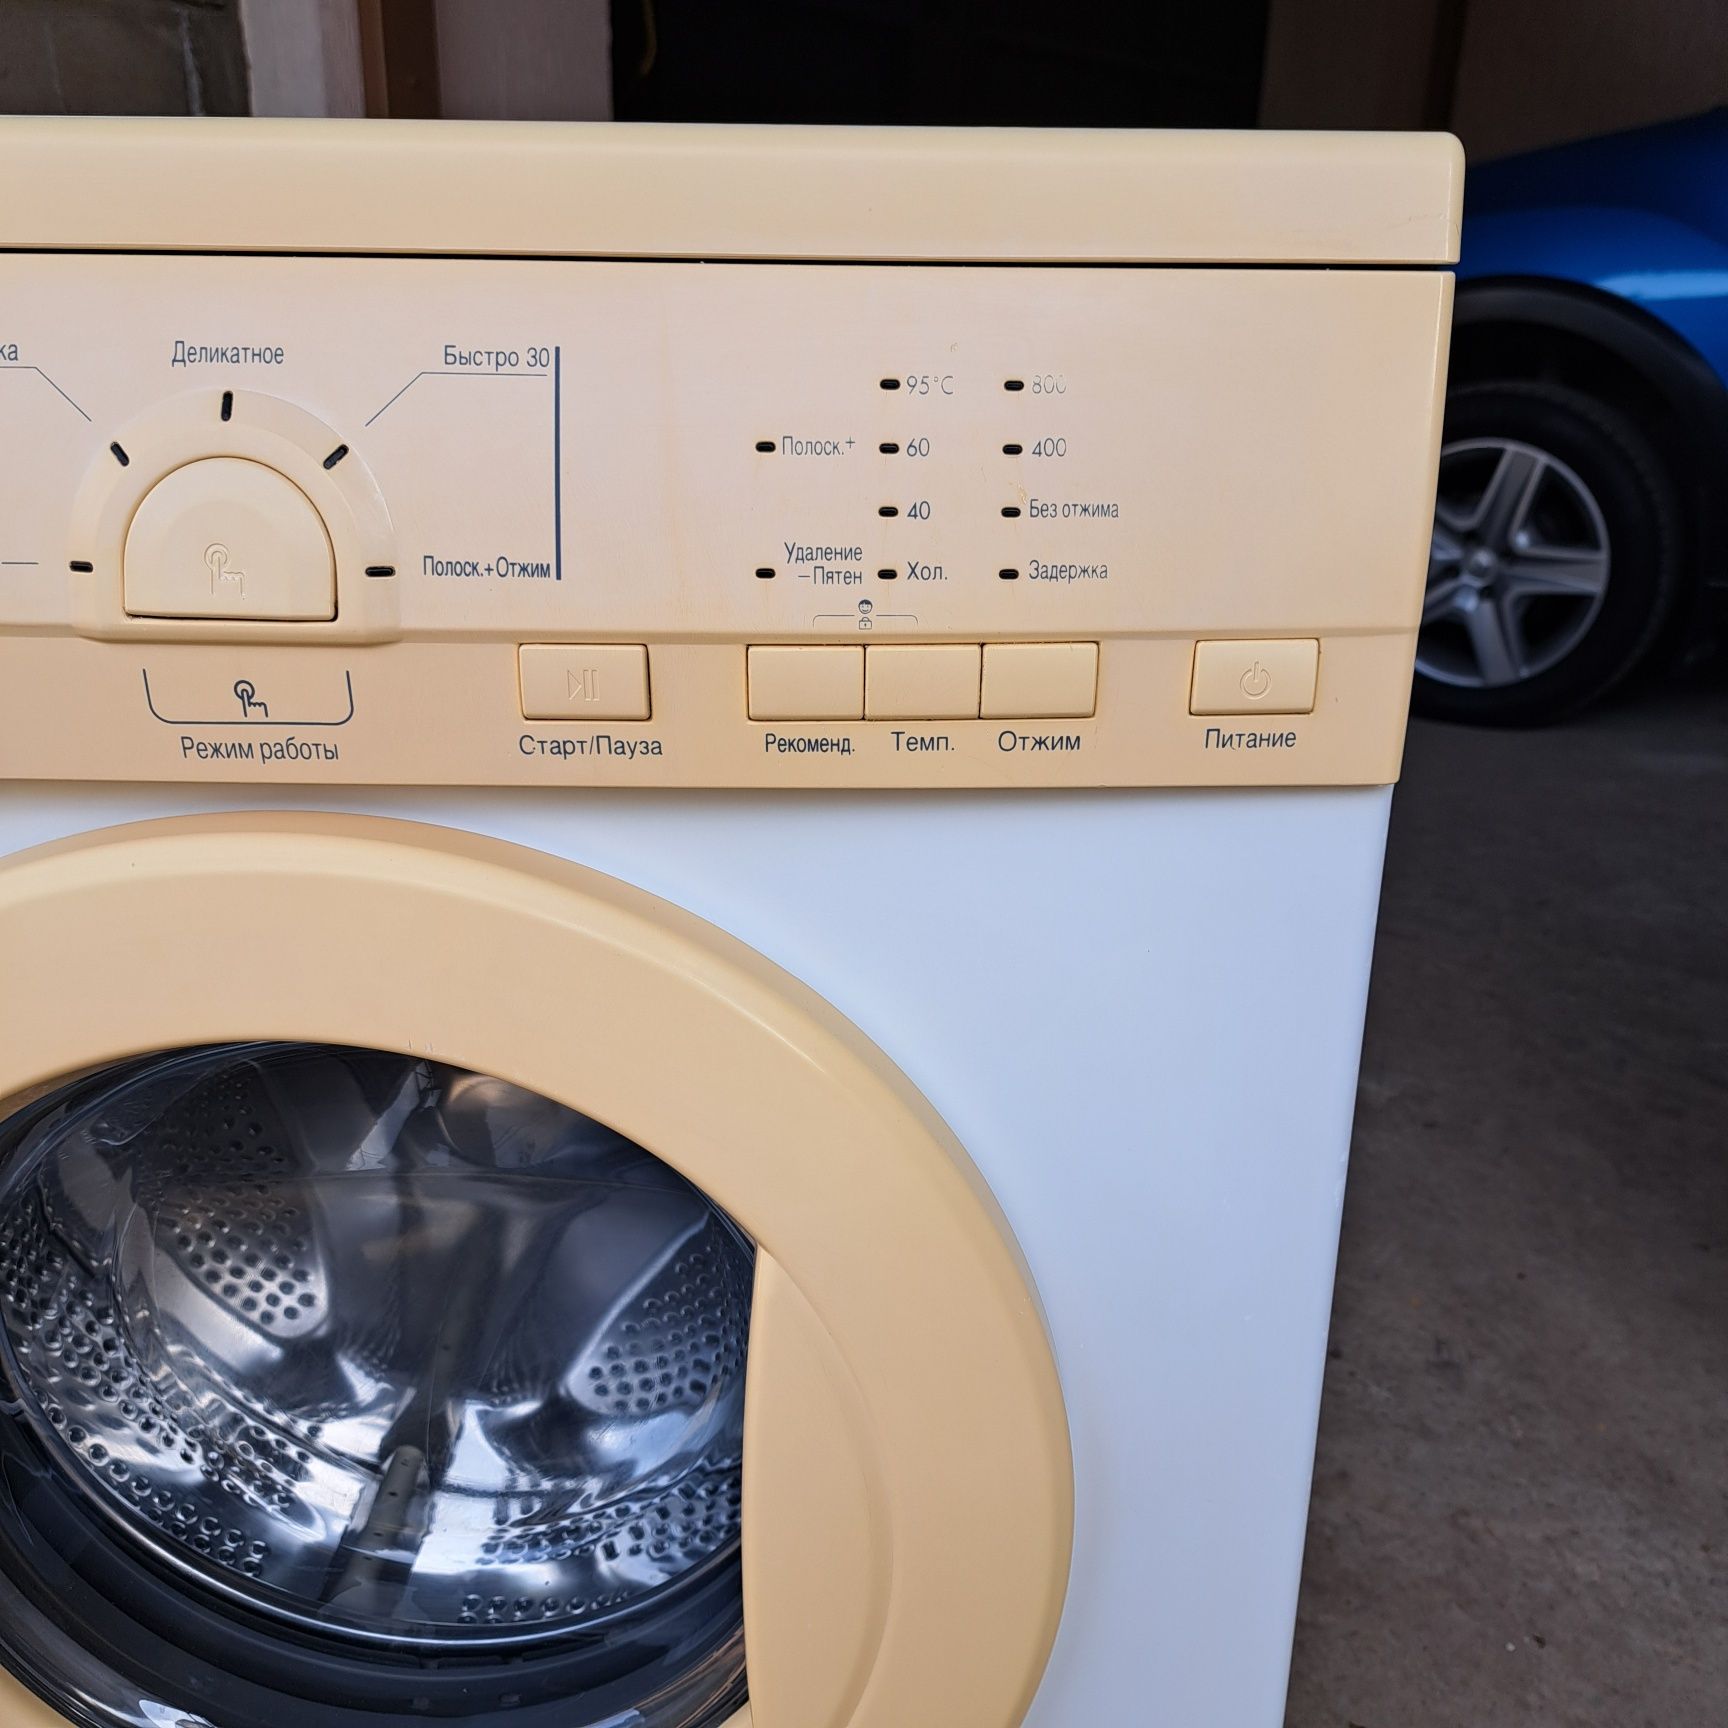 Продам стиральную машину LG WD-80250SP